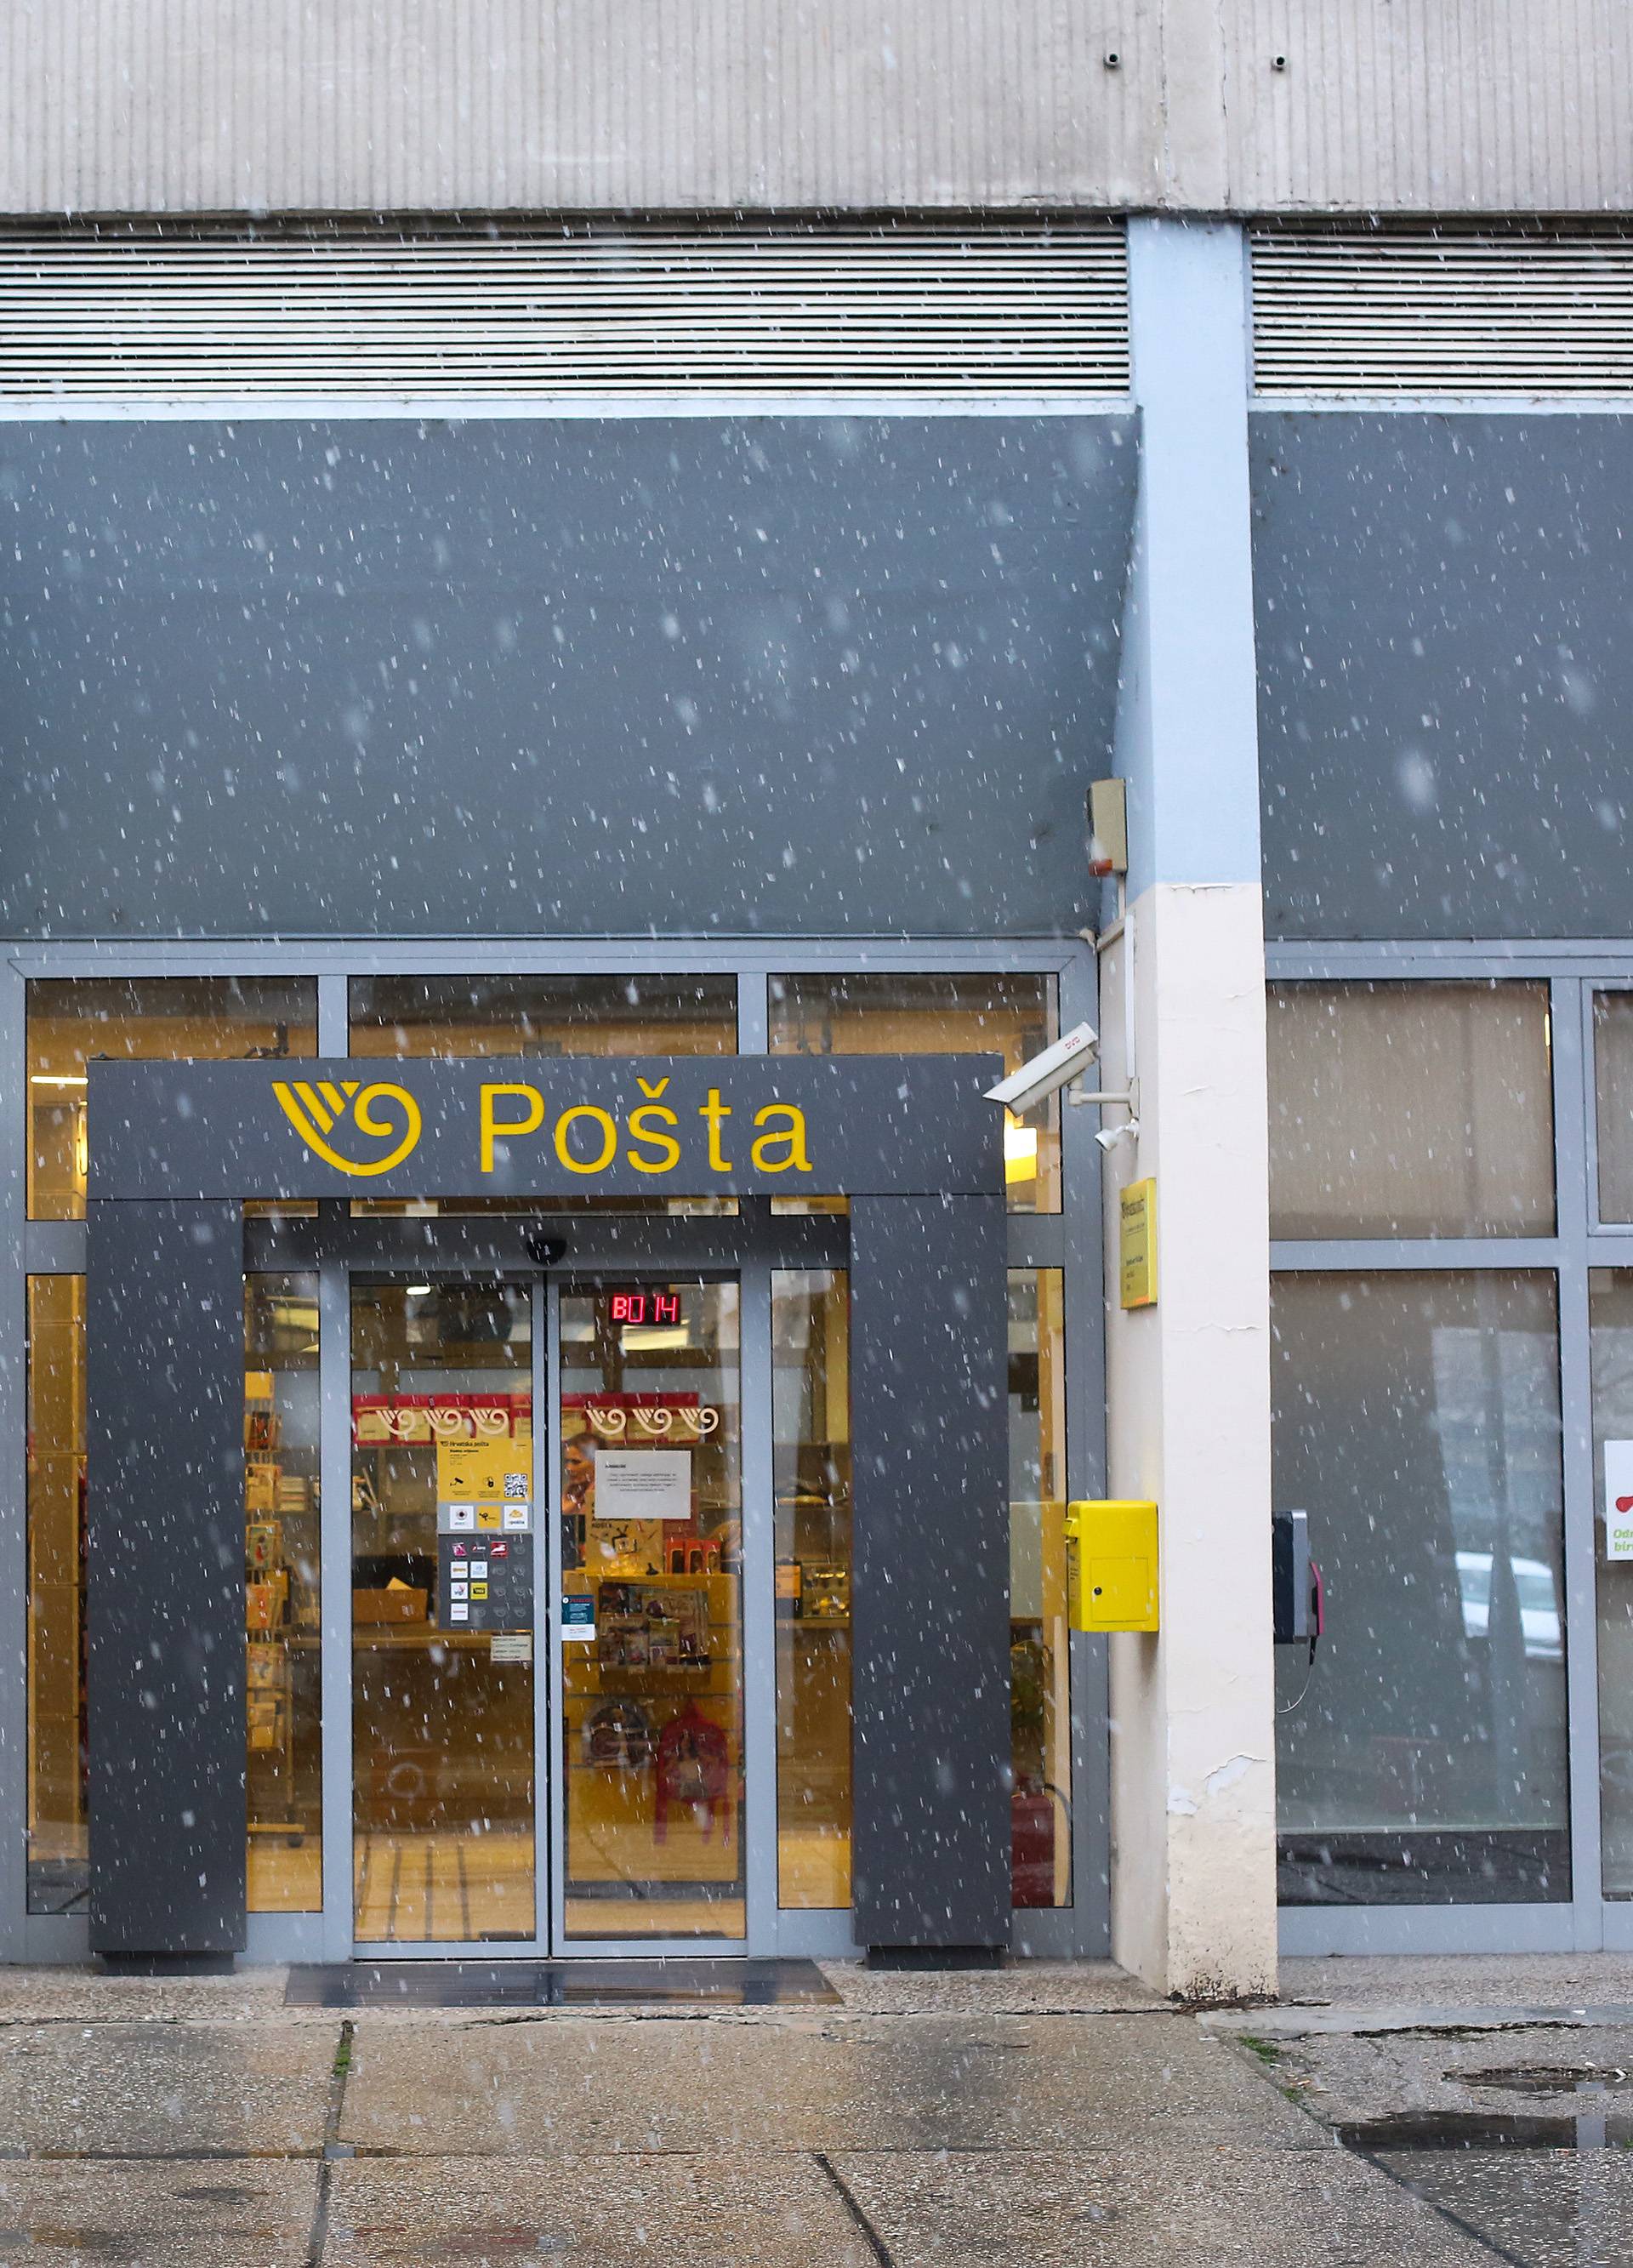 Dvojica razbojnika opljačkala poslovnicu pošte u Zagrebu